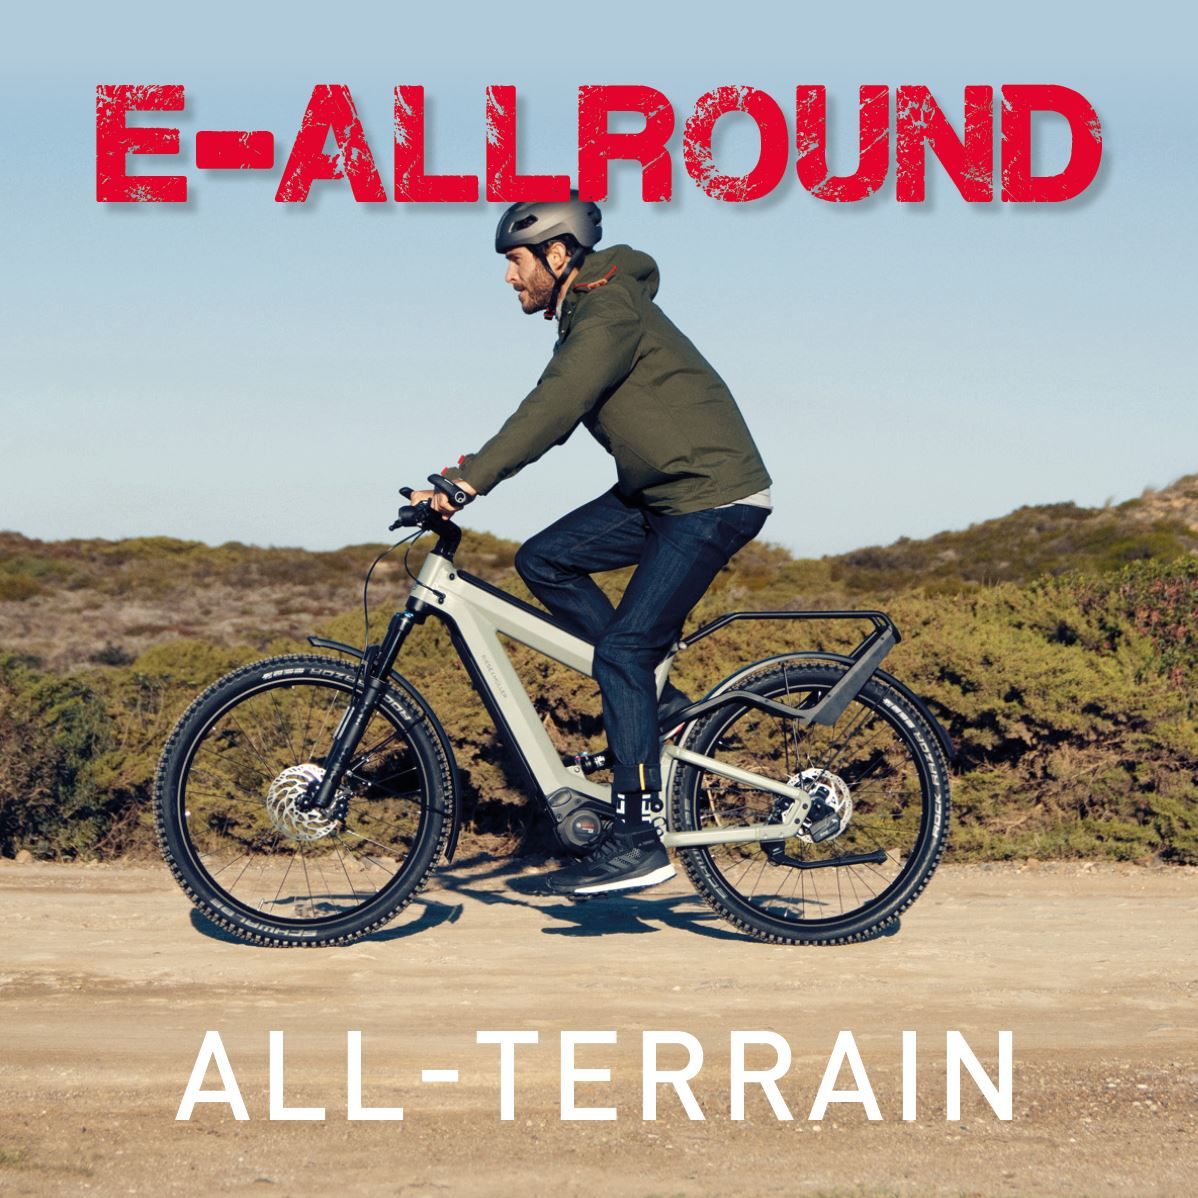 All Terrain E-Bikes